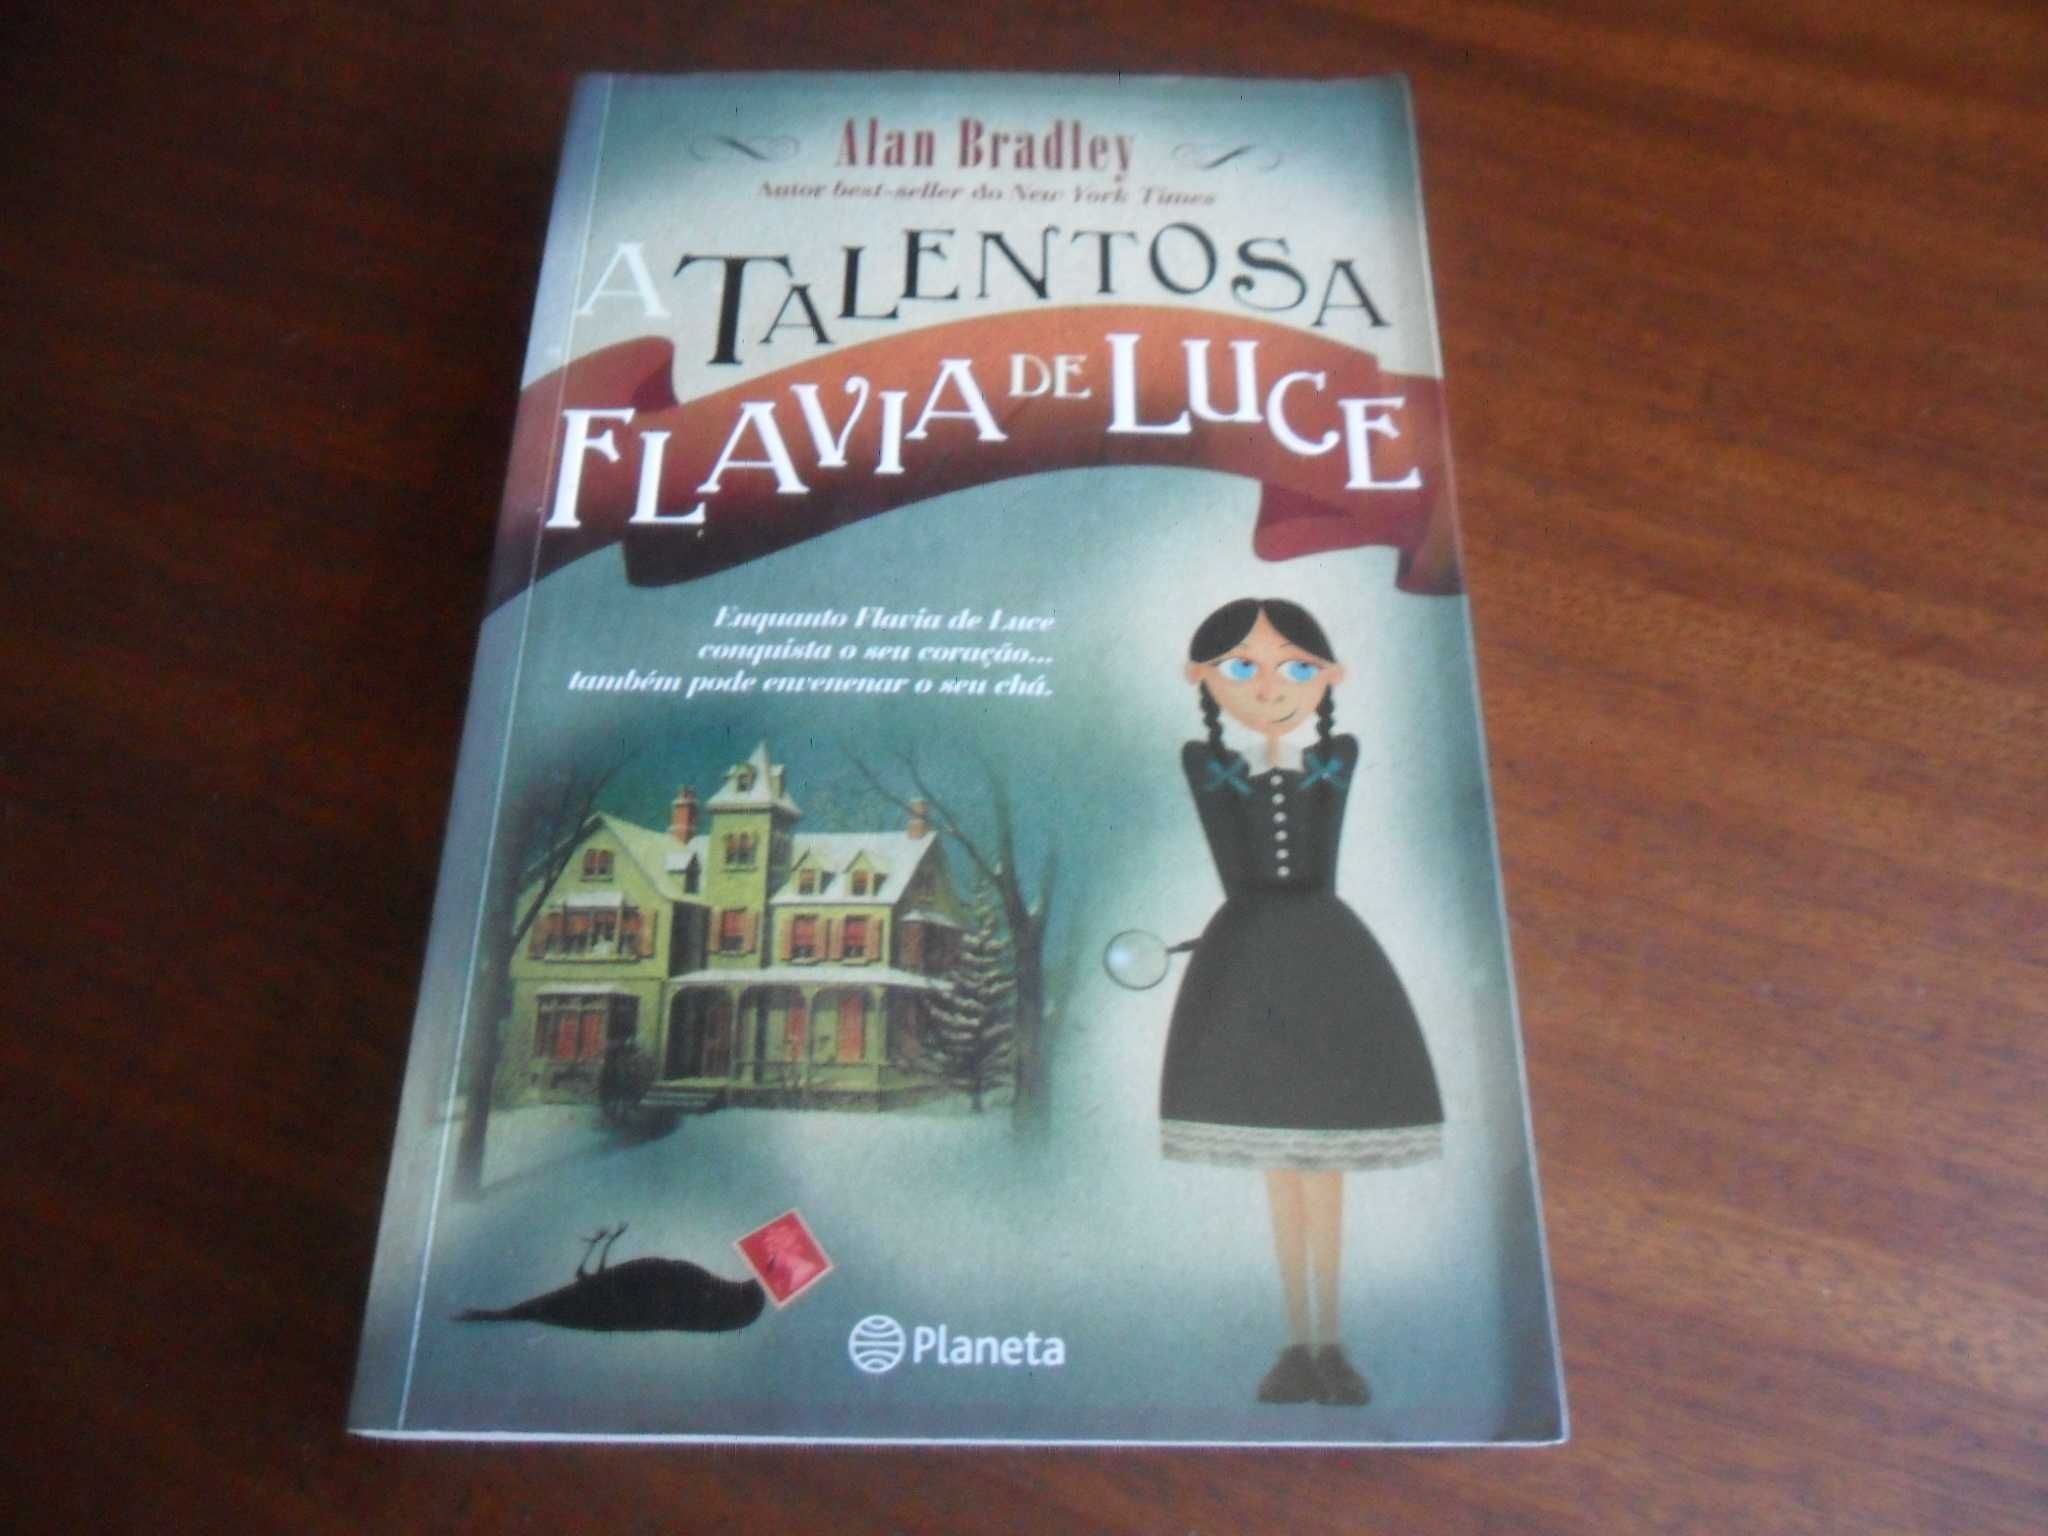 "A Talentosa Flavia de Luce" de Alan Bradley - 1ª Edição de 2009